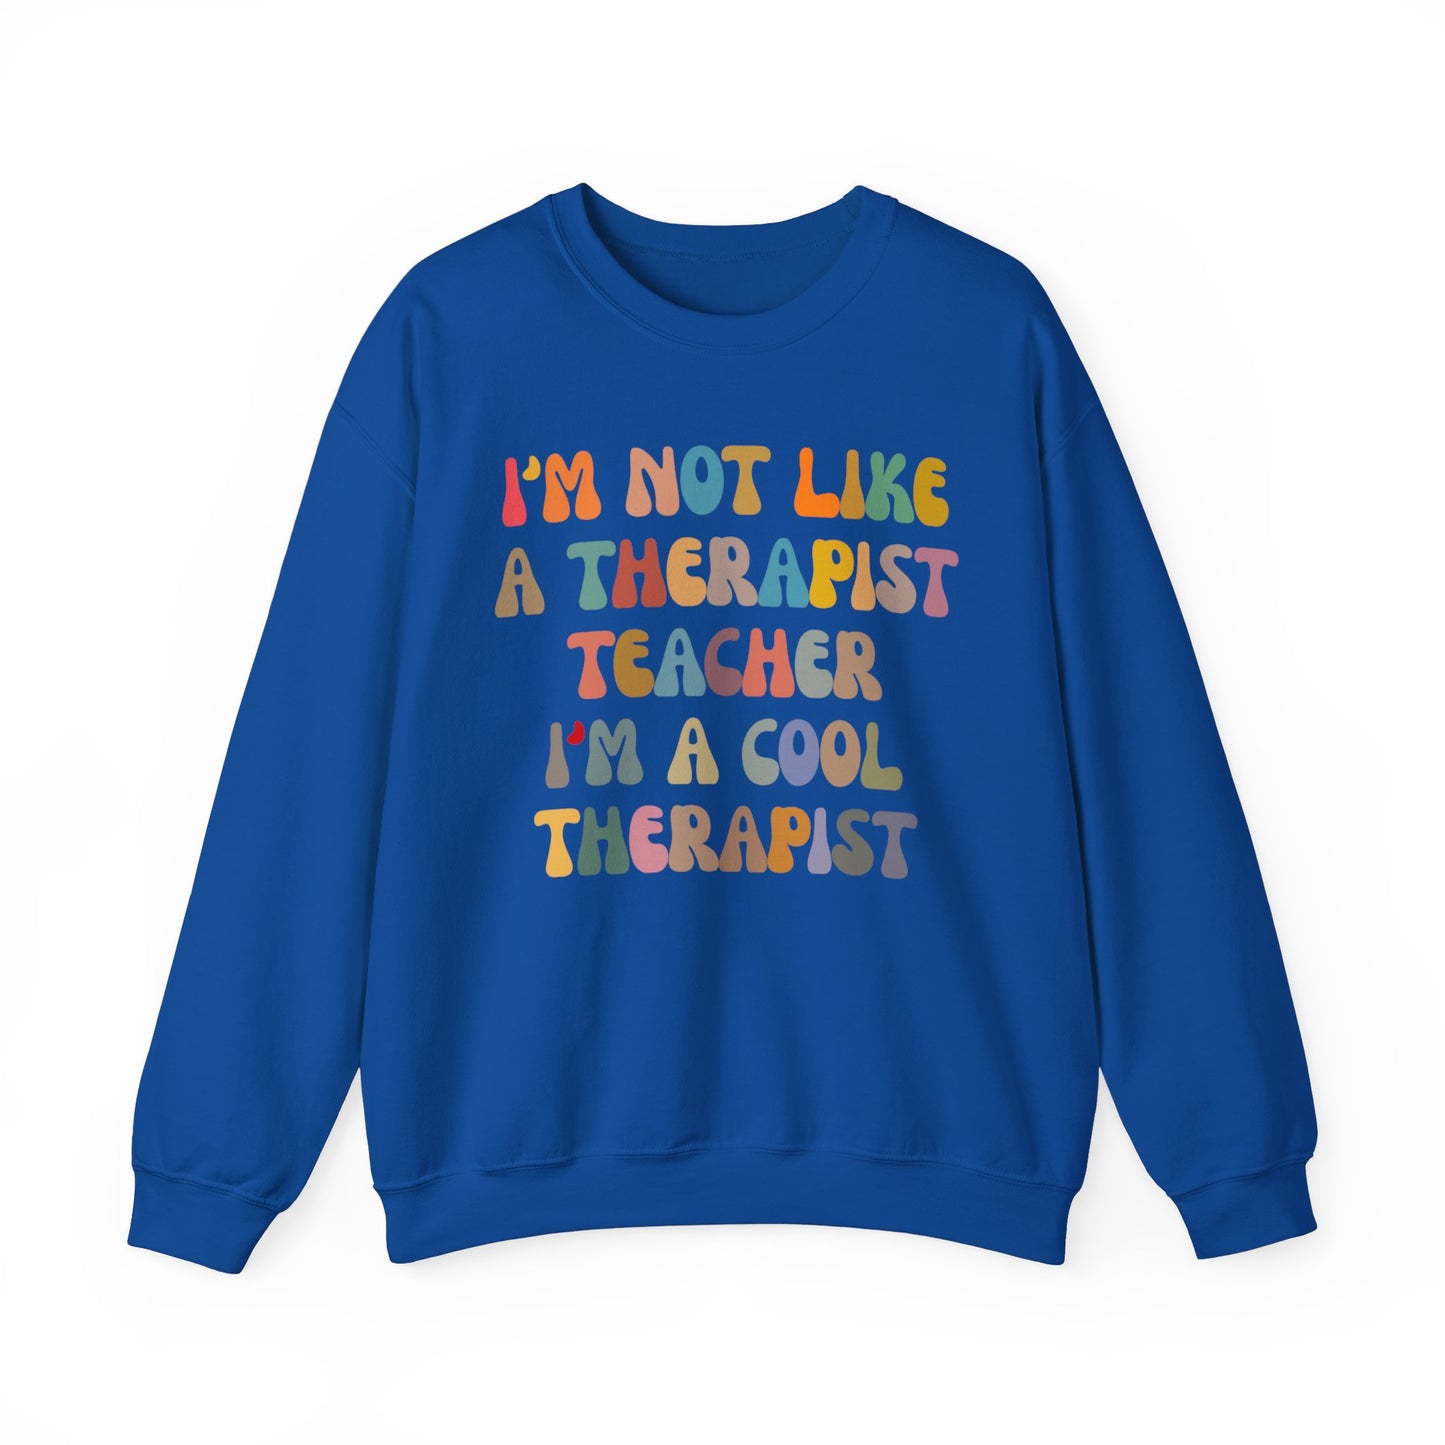 I'm Not Like A Therapist Teacher I'm A Cool Therapist Sweatshirt, Cool Therapist Appreciation Sweatshirt, Sweatshirt for Therapist, S1553